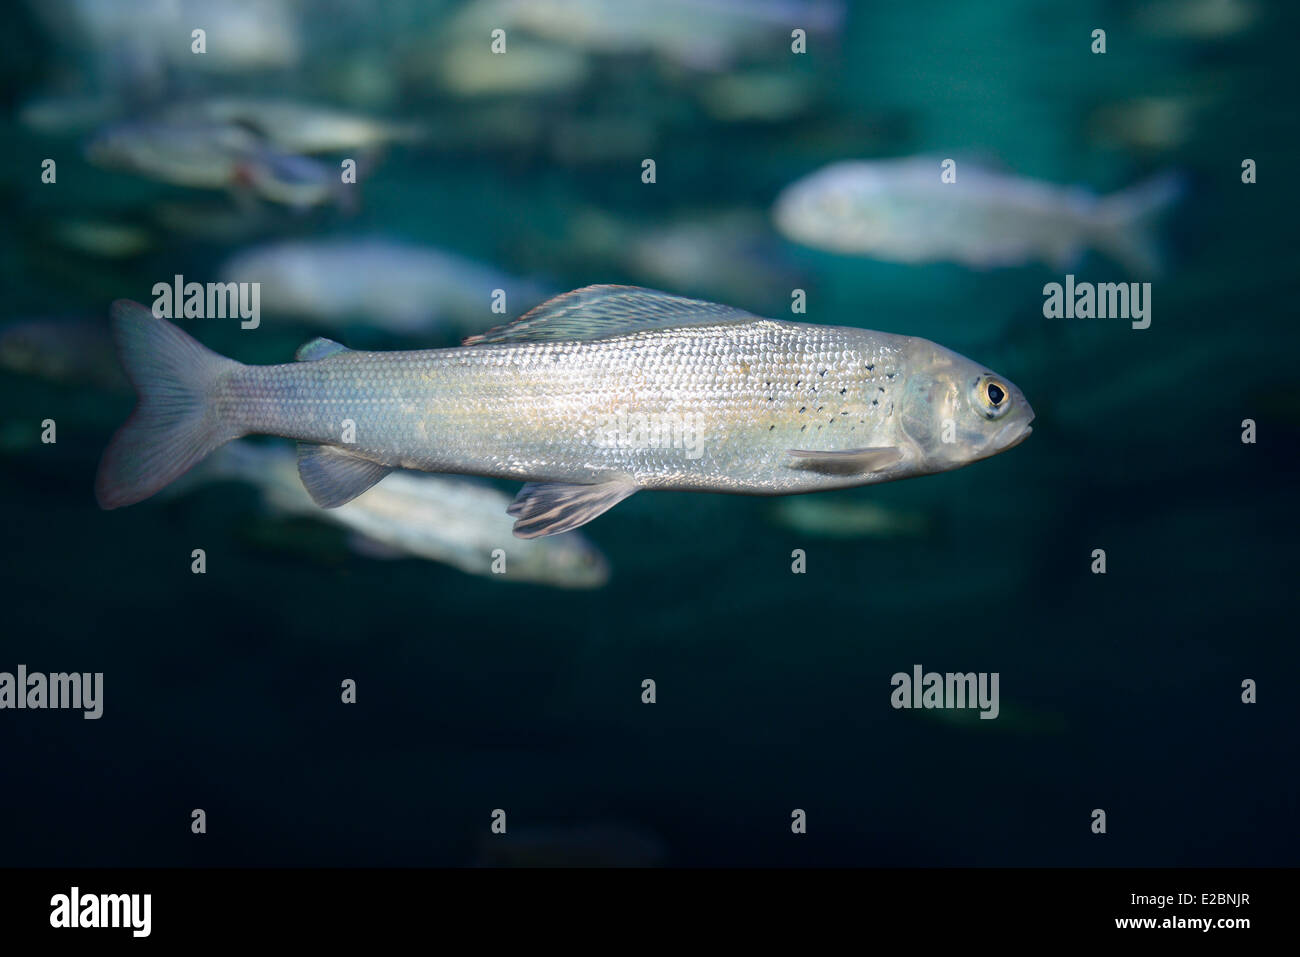 Arctic grayling freddo di pesci di acqua dolce nuoto sott'acqua in acquario ripleys toronto Foto Stock